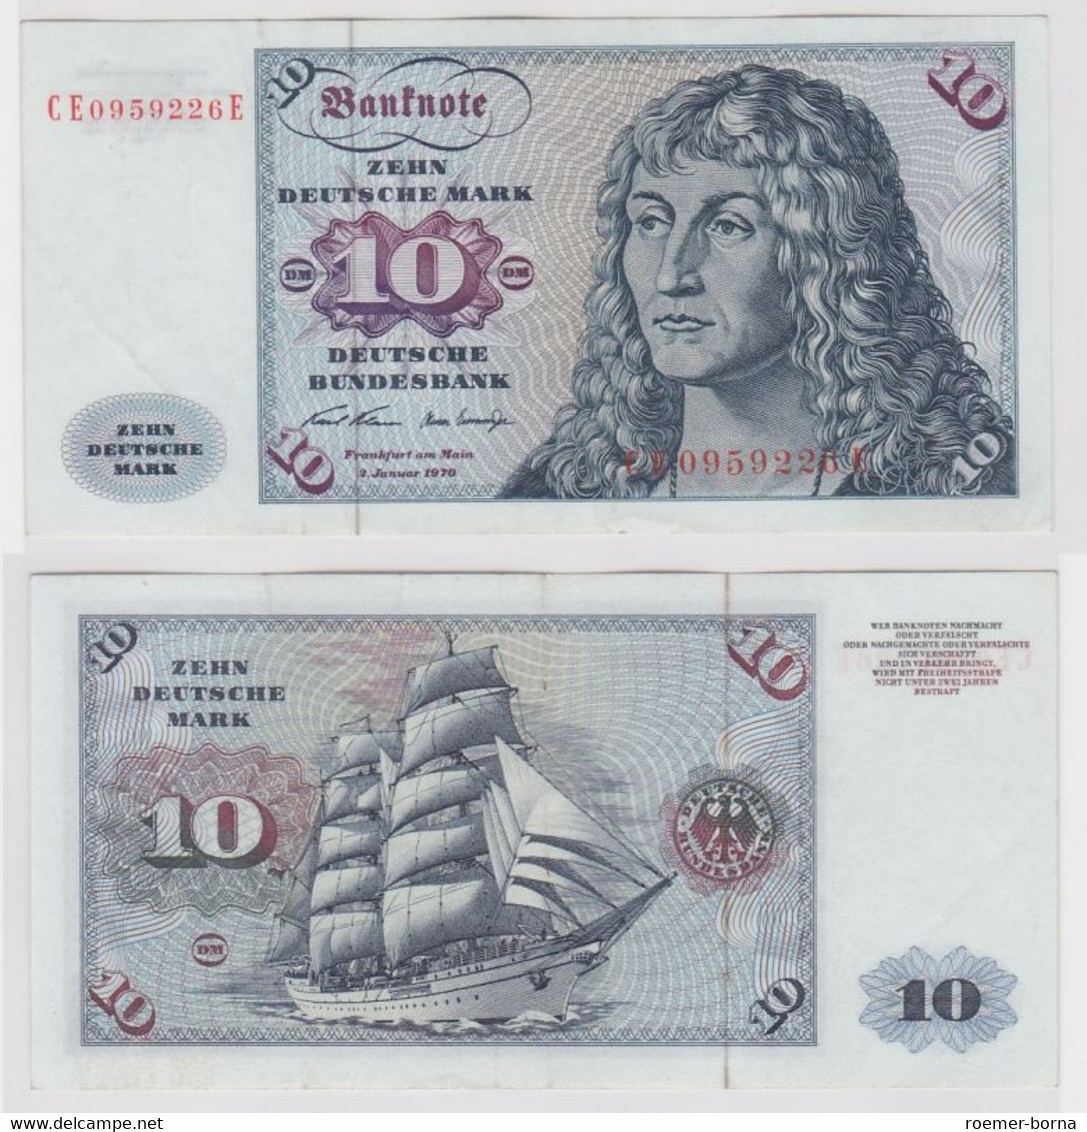 T147573 Banknote 10 DM Deutsche Mark Ro. 270b Schein 2.Jan. 1970 KN CE 0959226 E - 10 DM